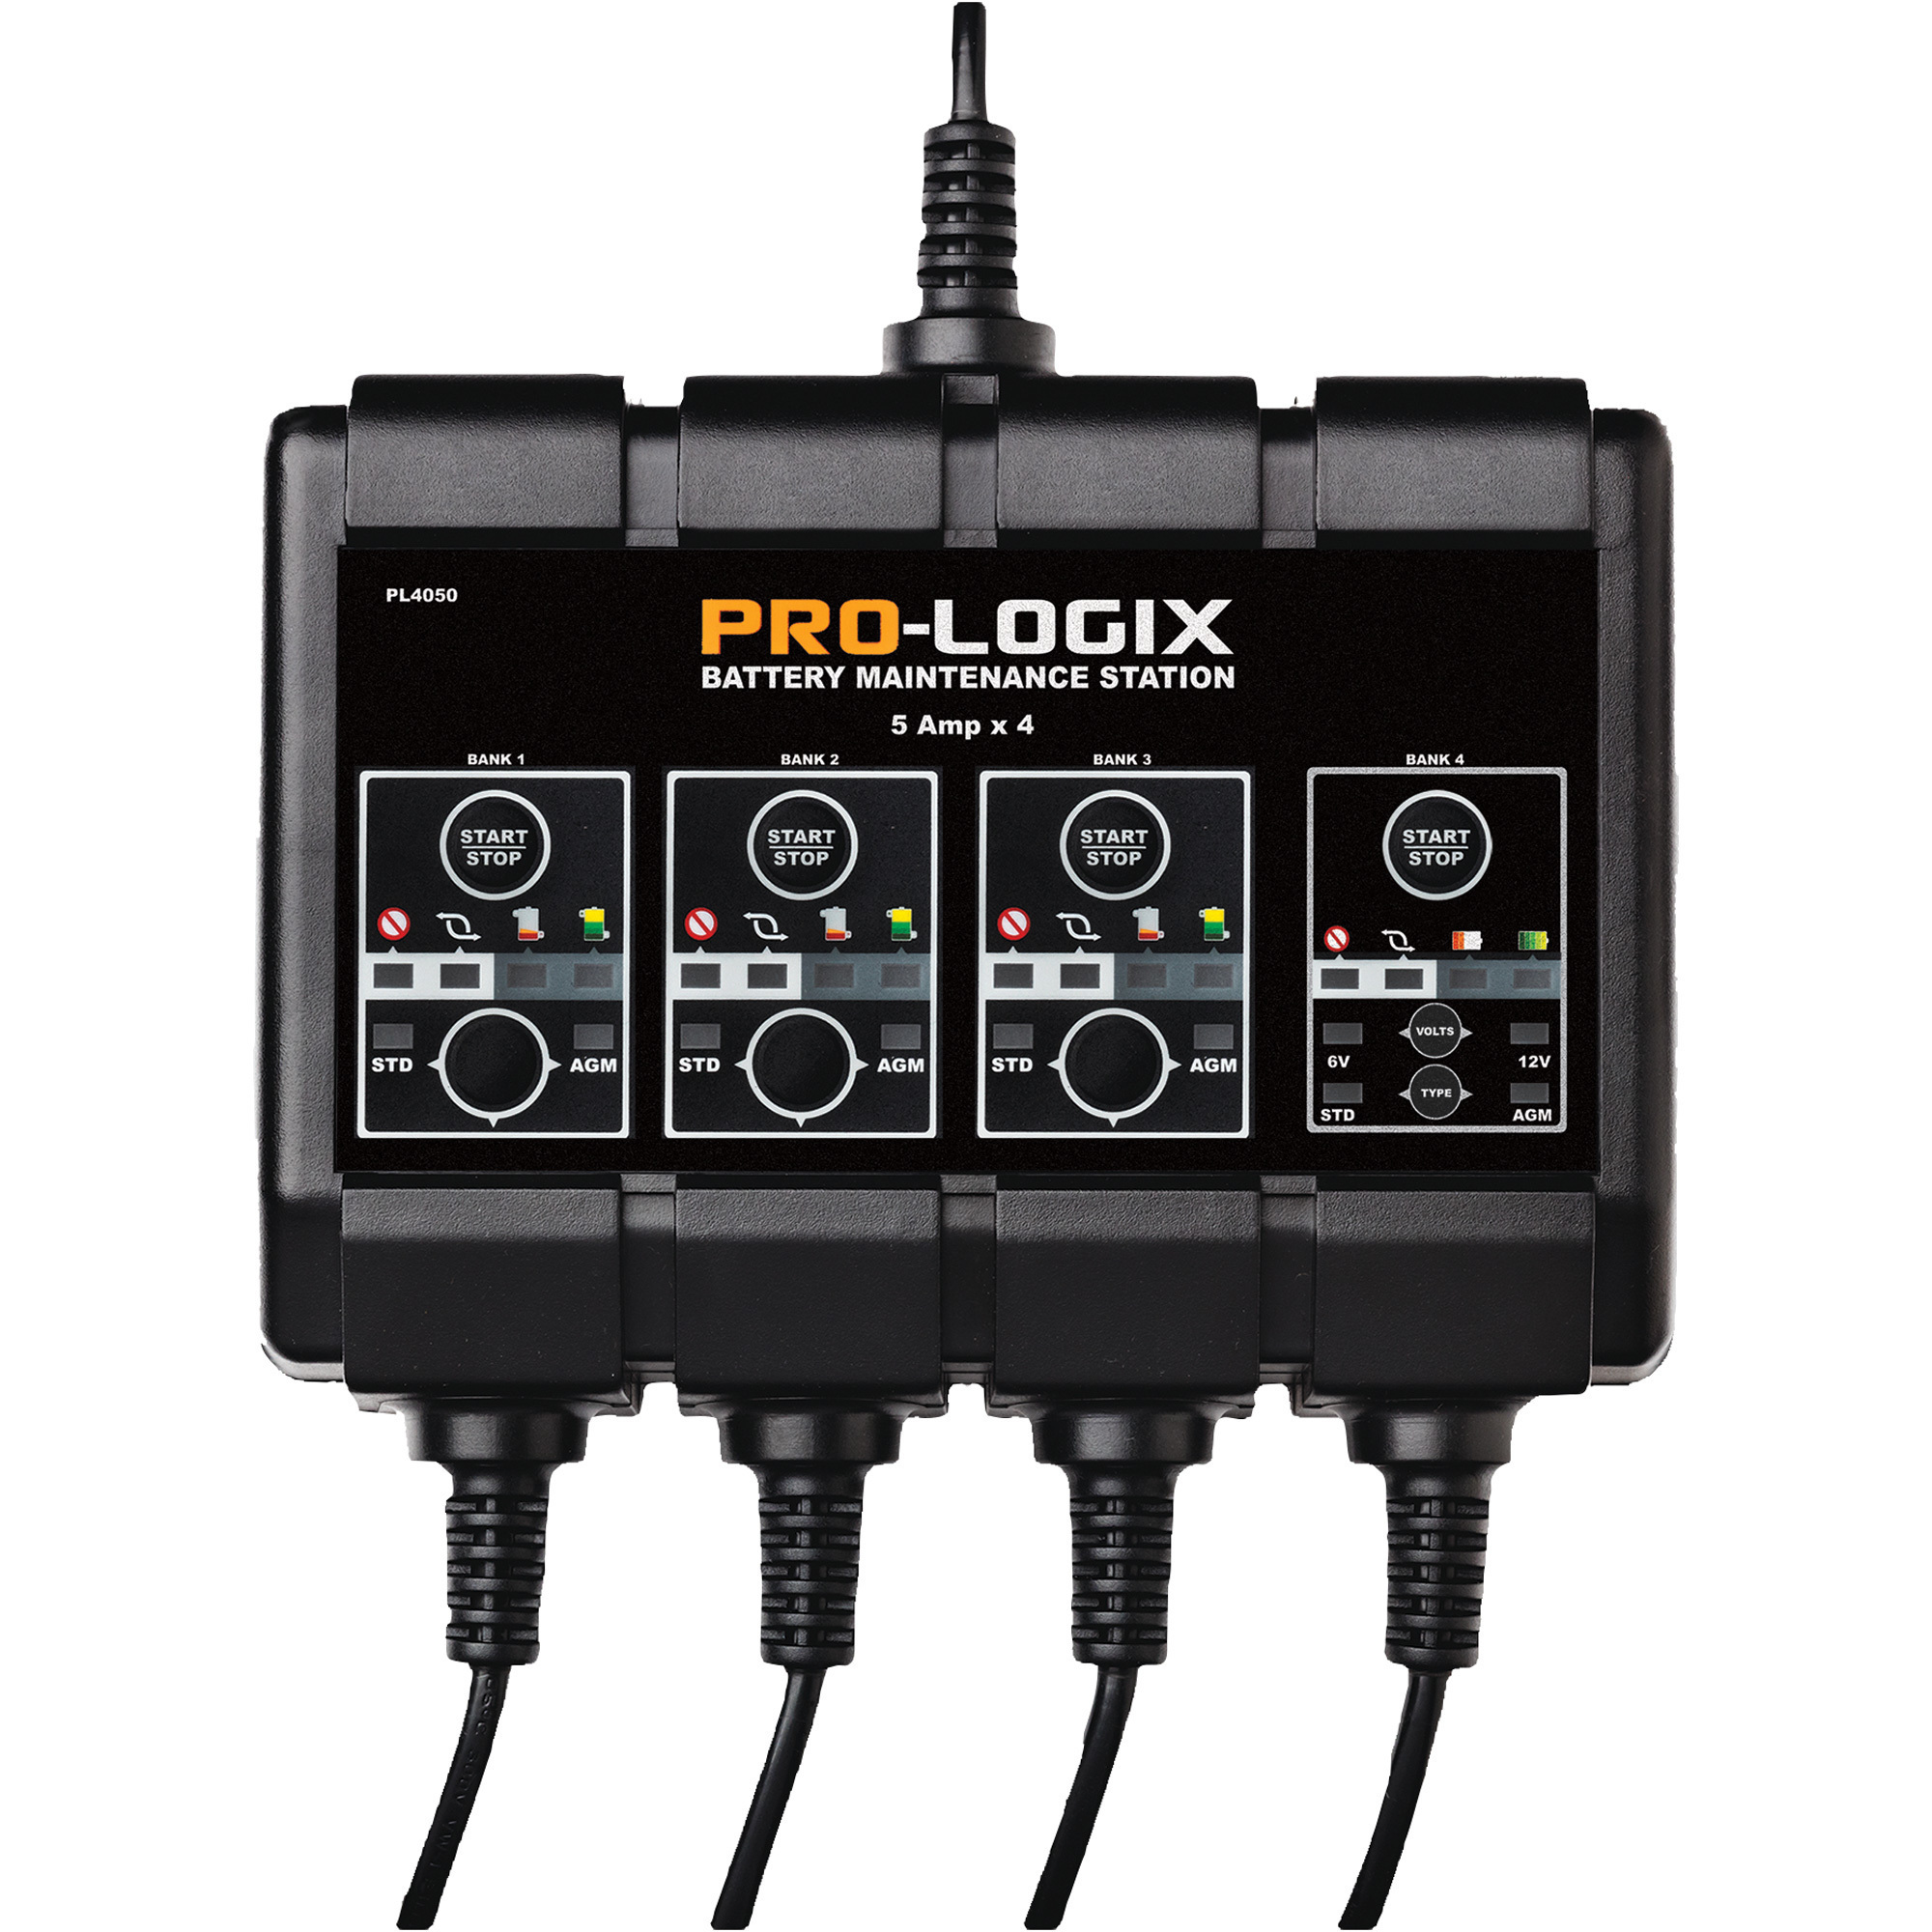 Pro-Logix Battery Maintenance Station, 5 Amps x 4 Channels, Model PL4050